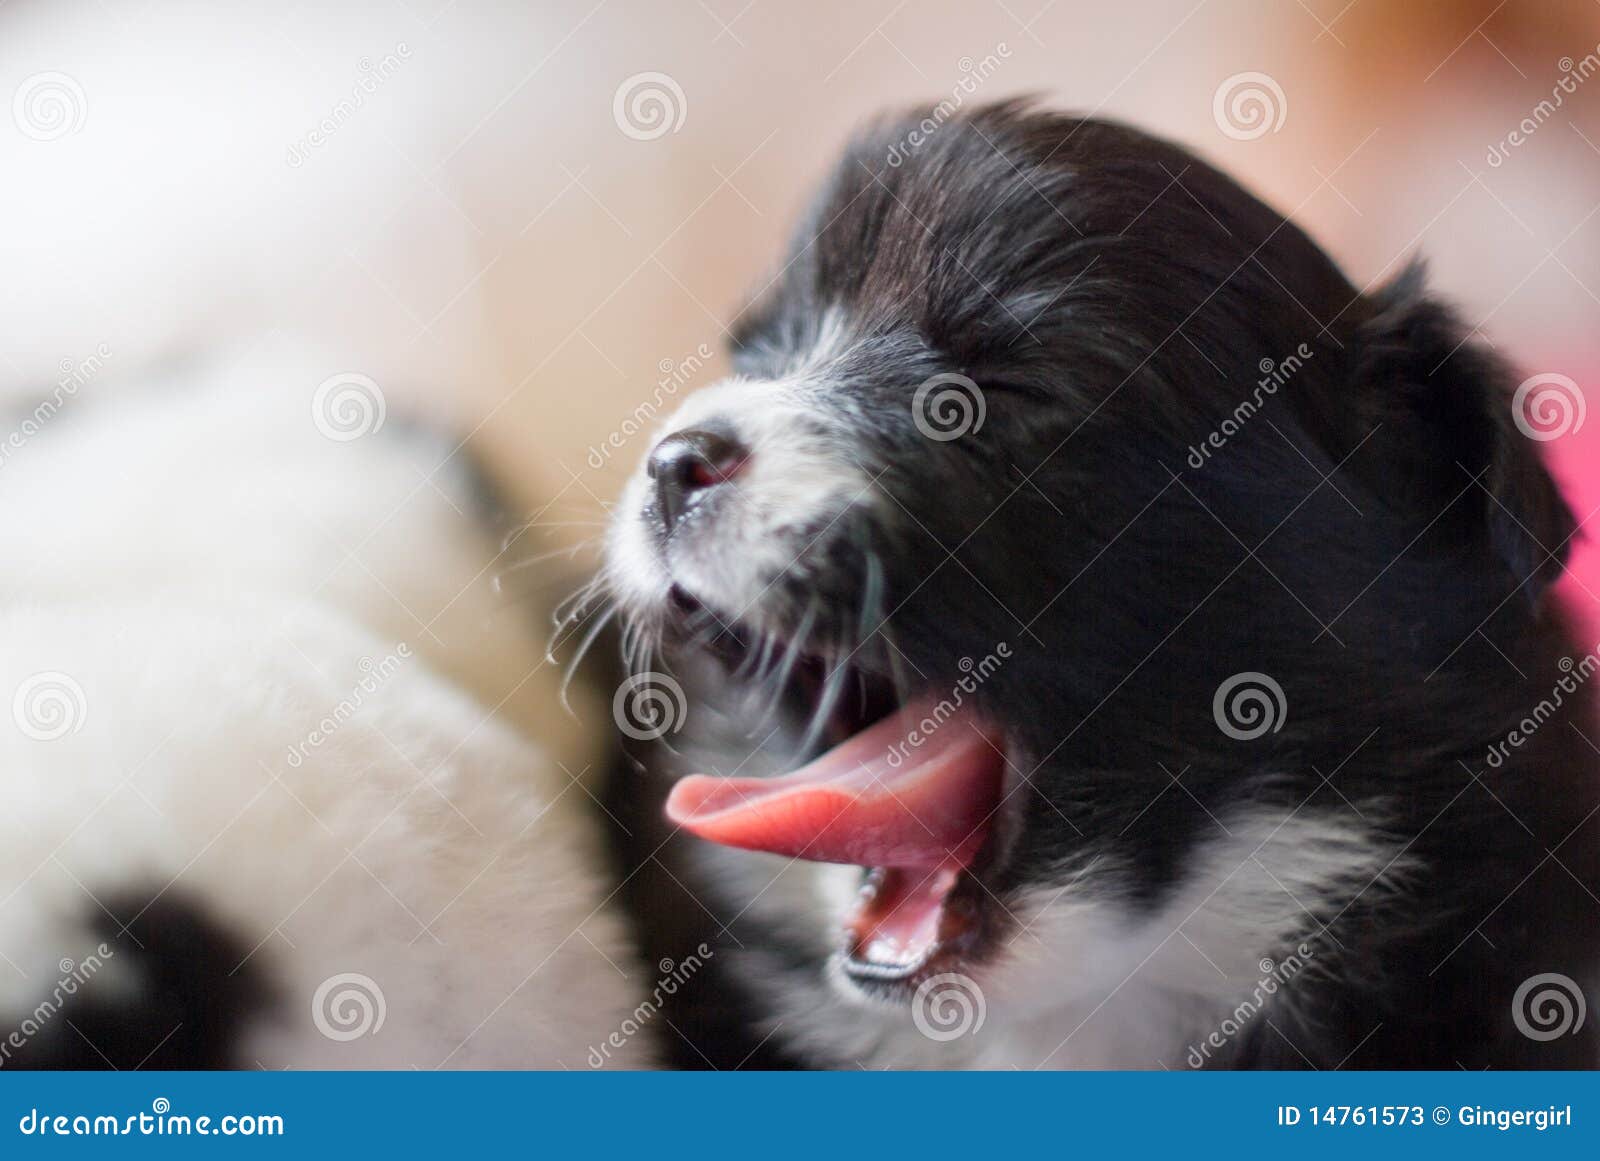 yawning dog mammal